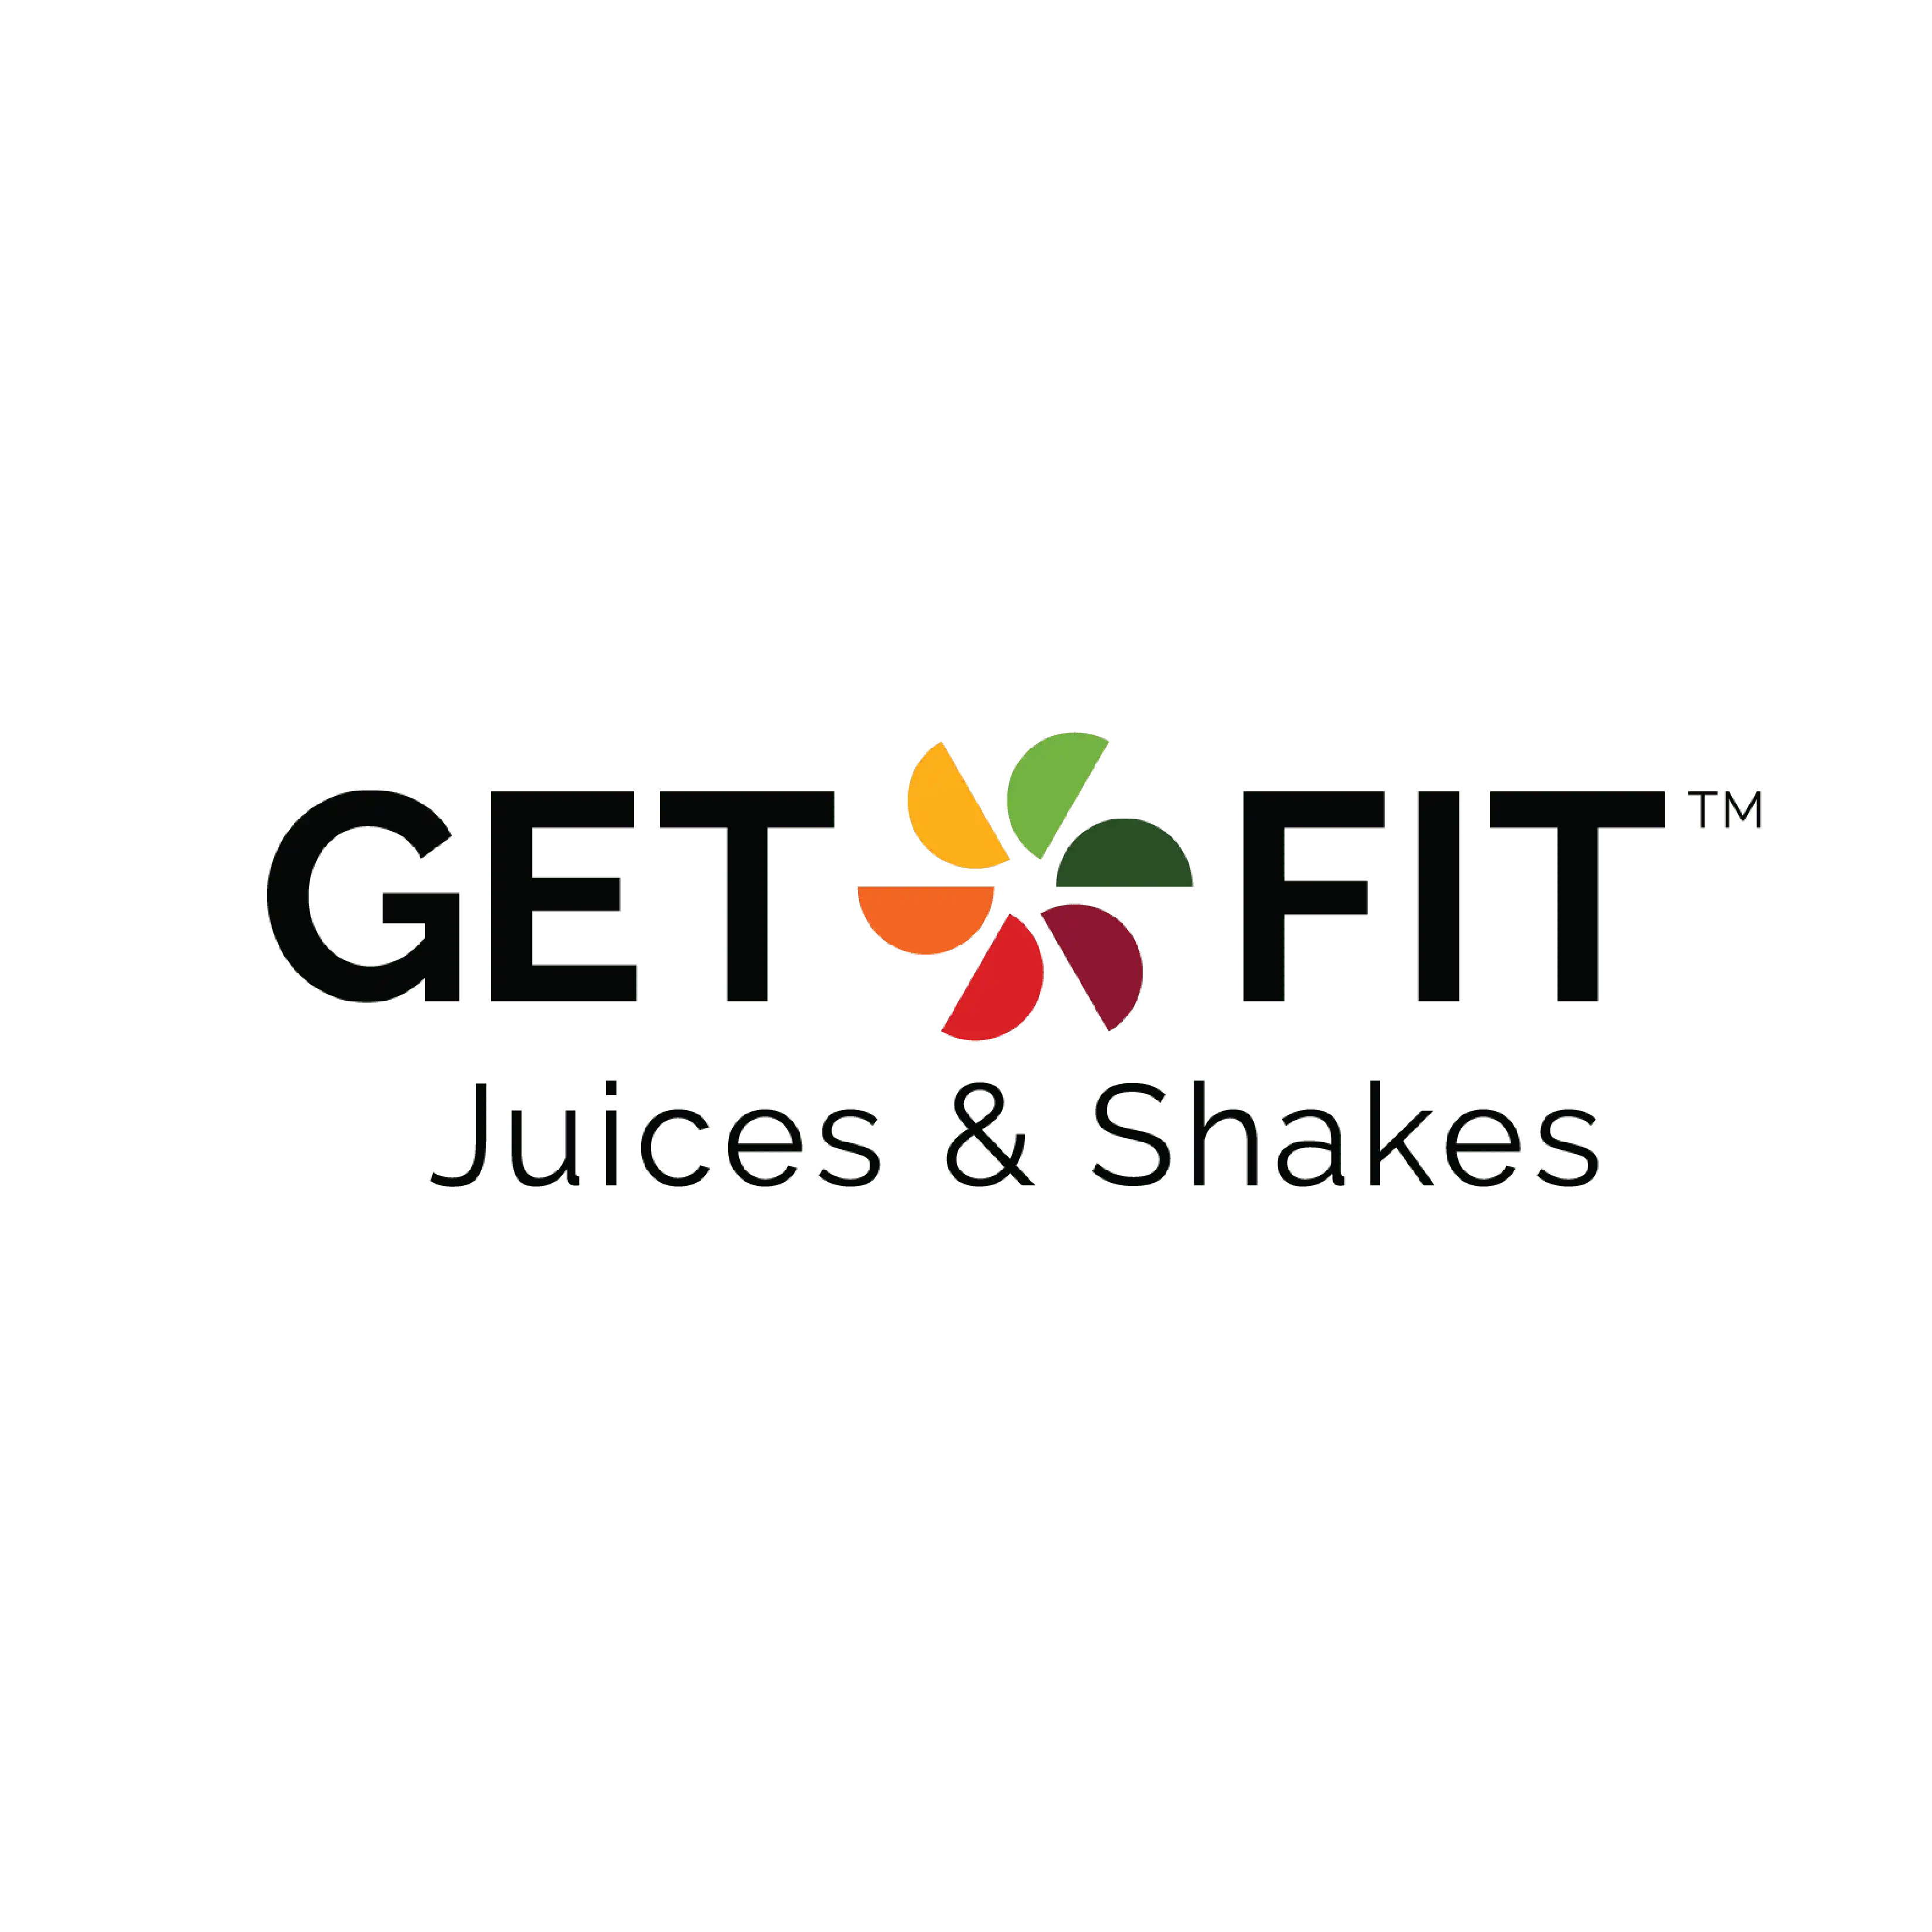 Get fit mobile app logo